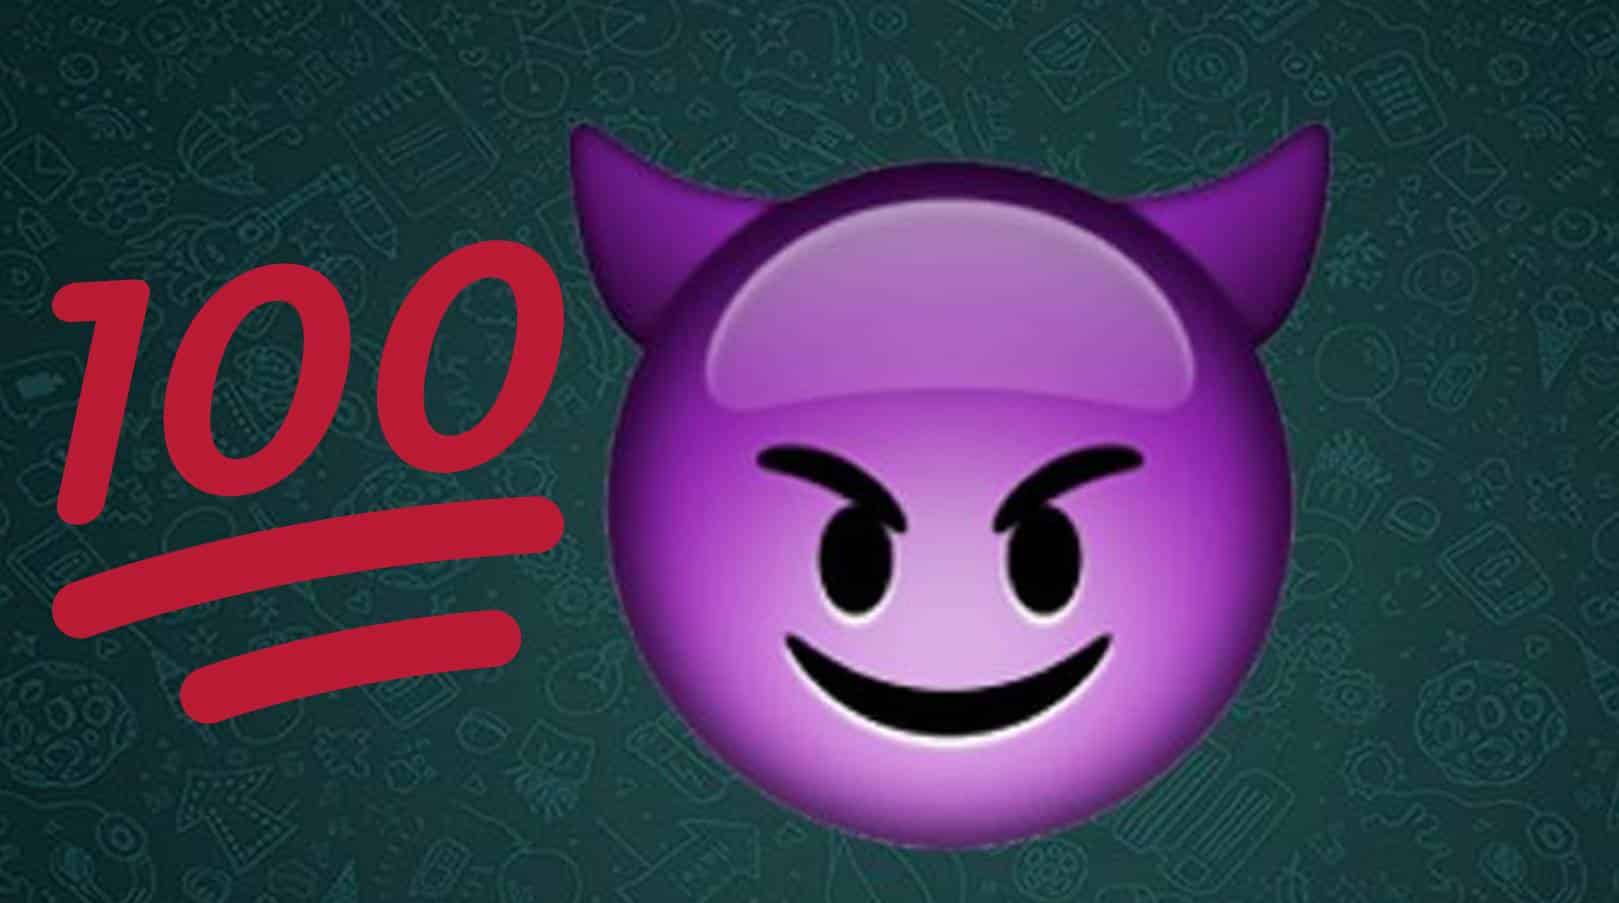 WhatsApp: O que significa o emoji do número 100 e o diabo roxo?